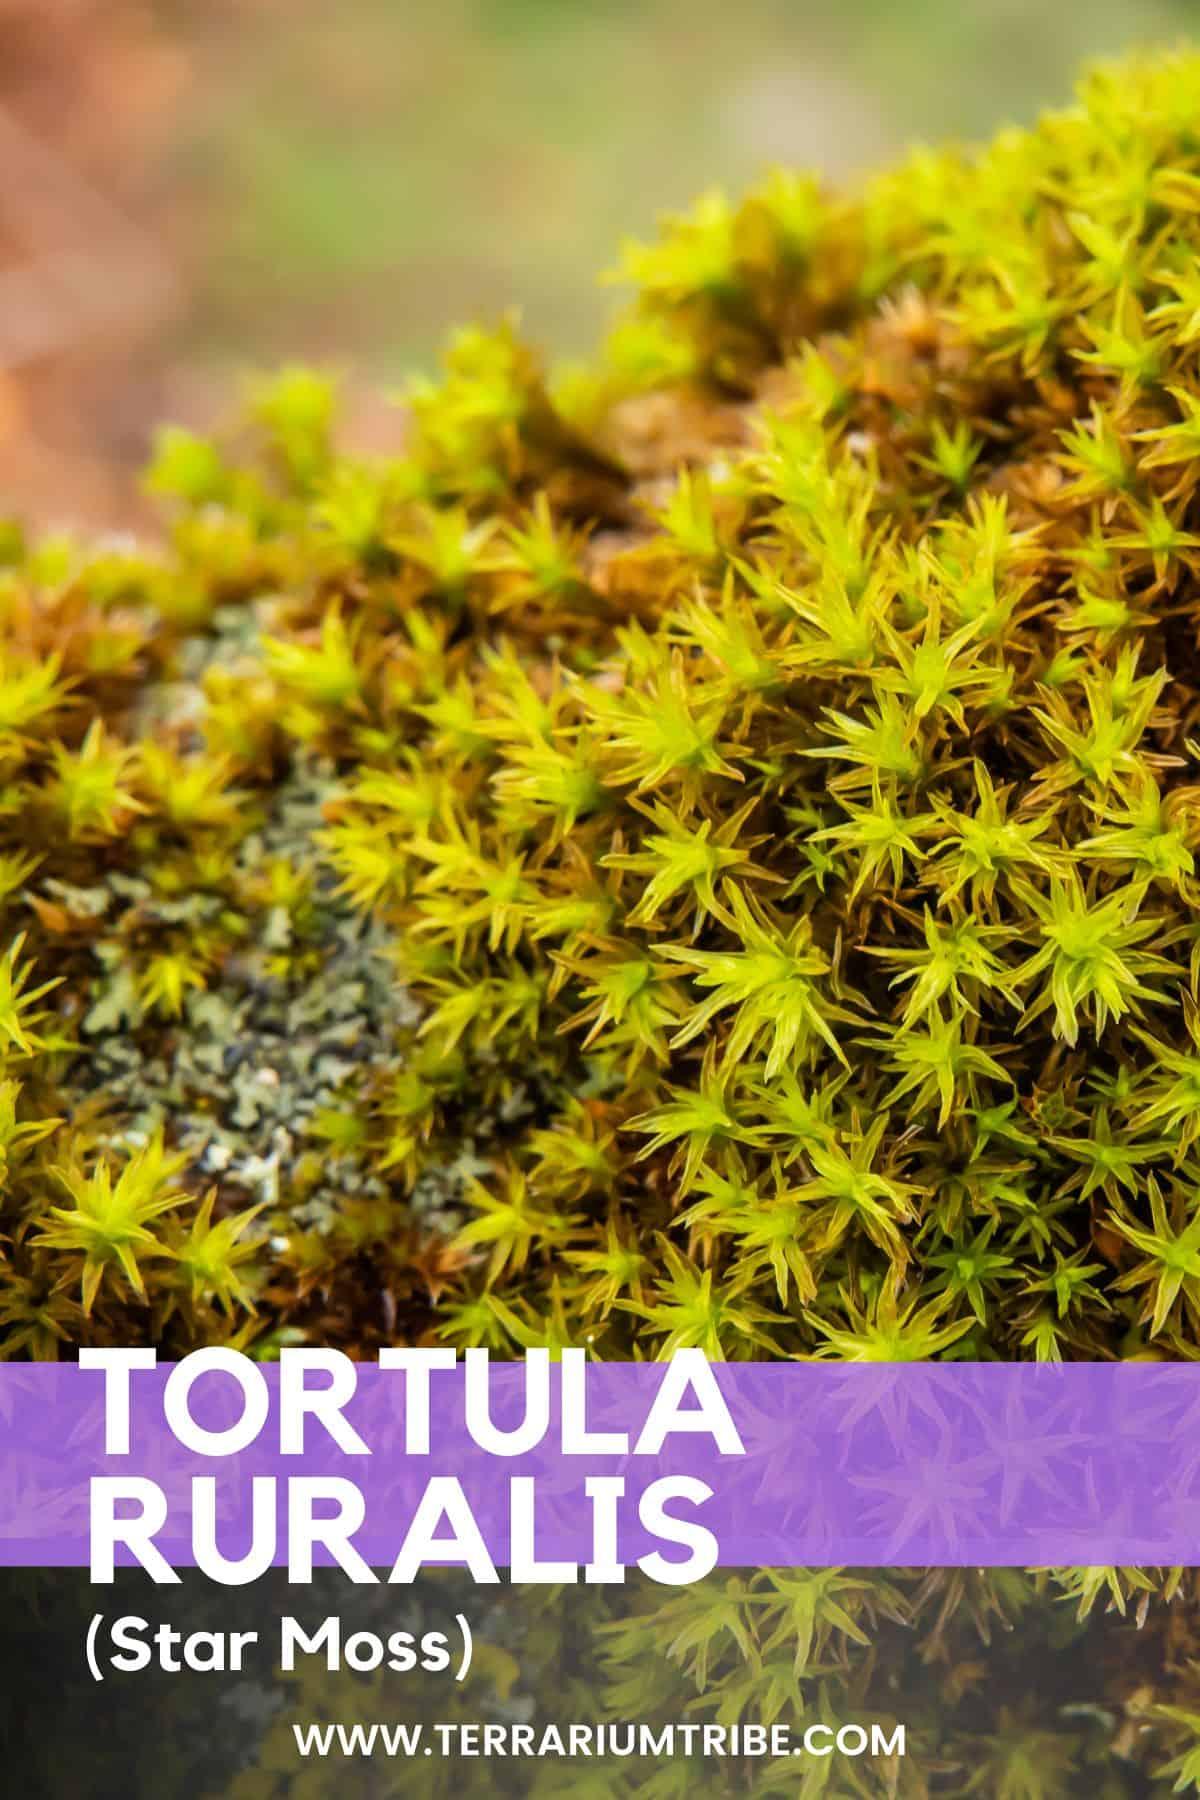 Tortula-Ruralis-Star-Moss-.jpg